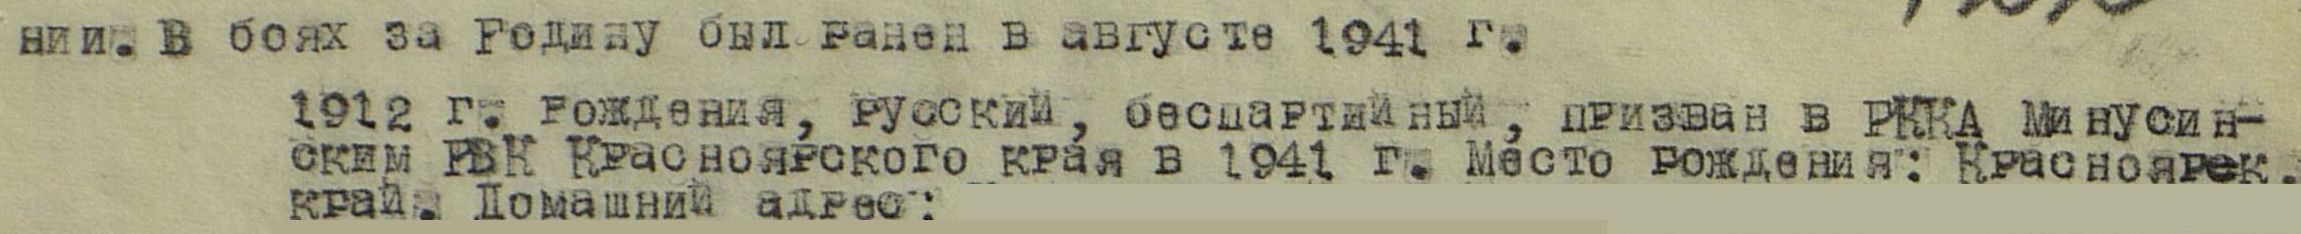 Выписка из приказа от 24.08.1944 г. № 029/Н о награждении Медалью «За отвагу»